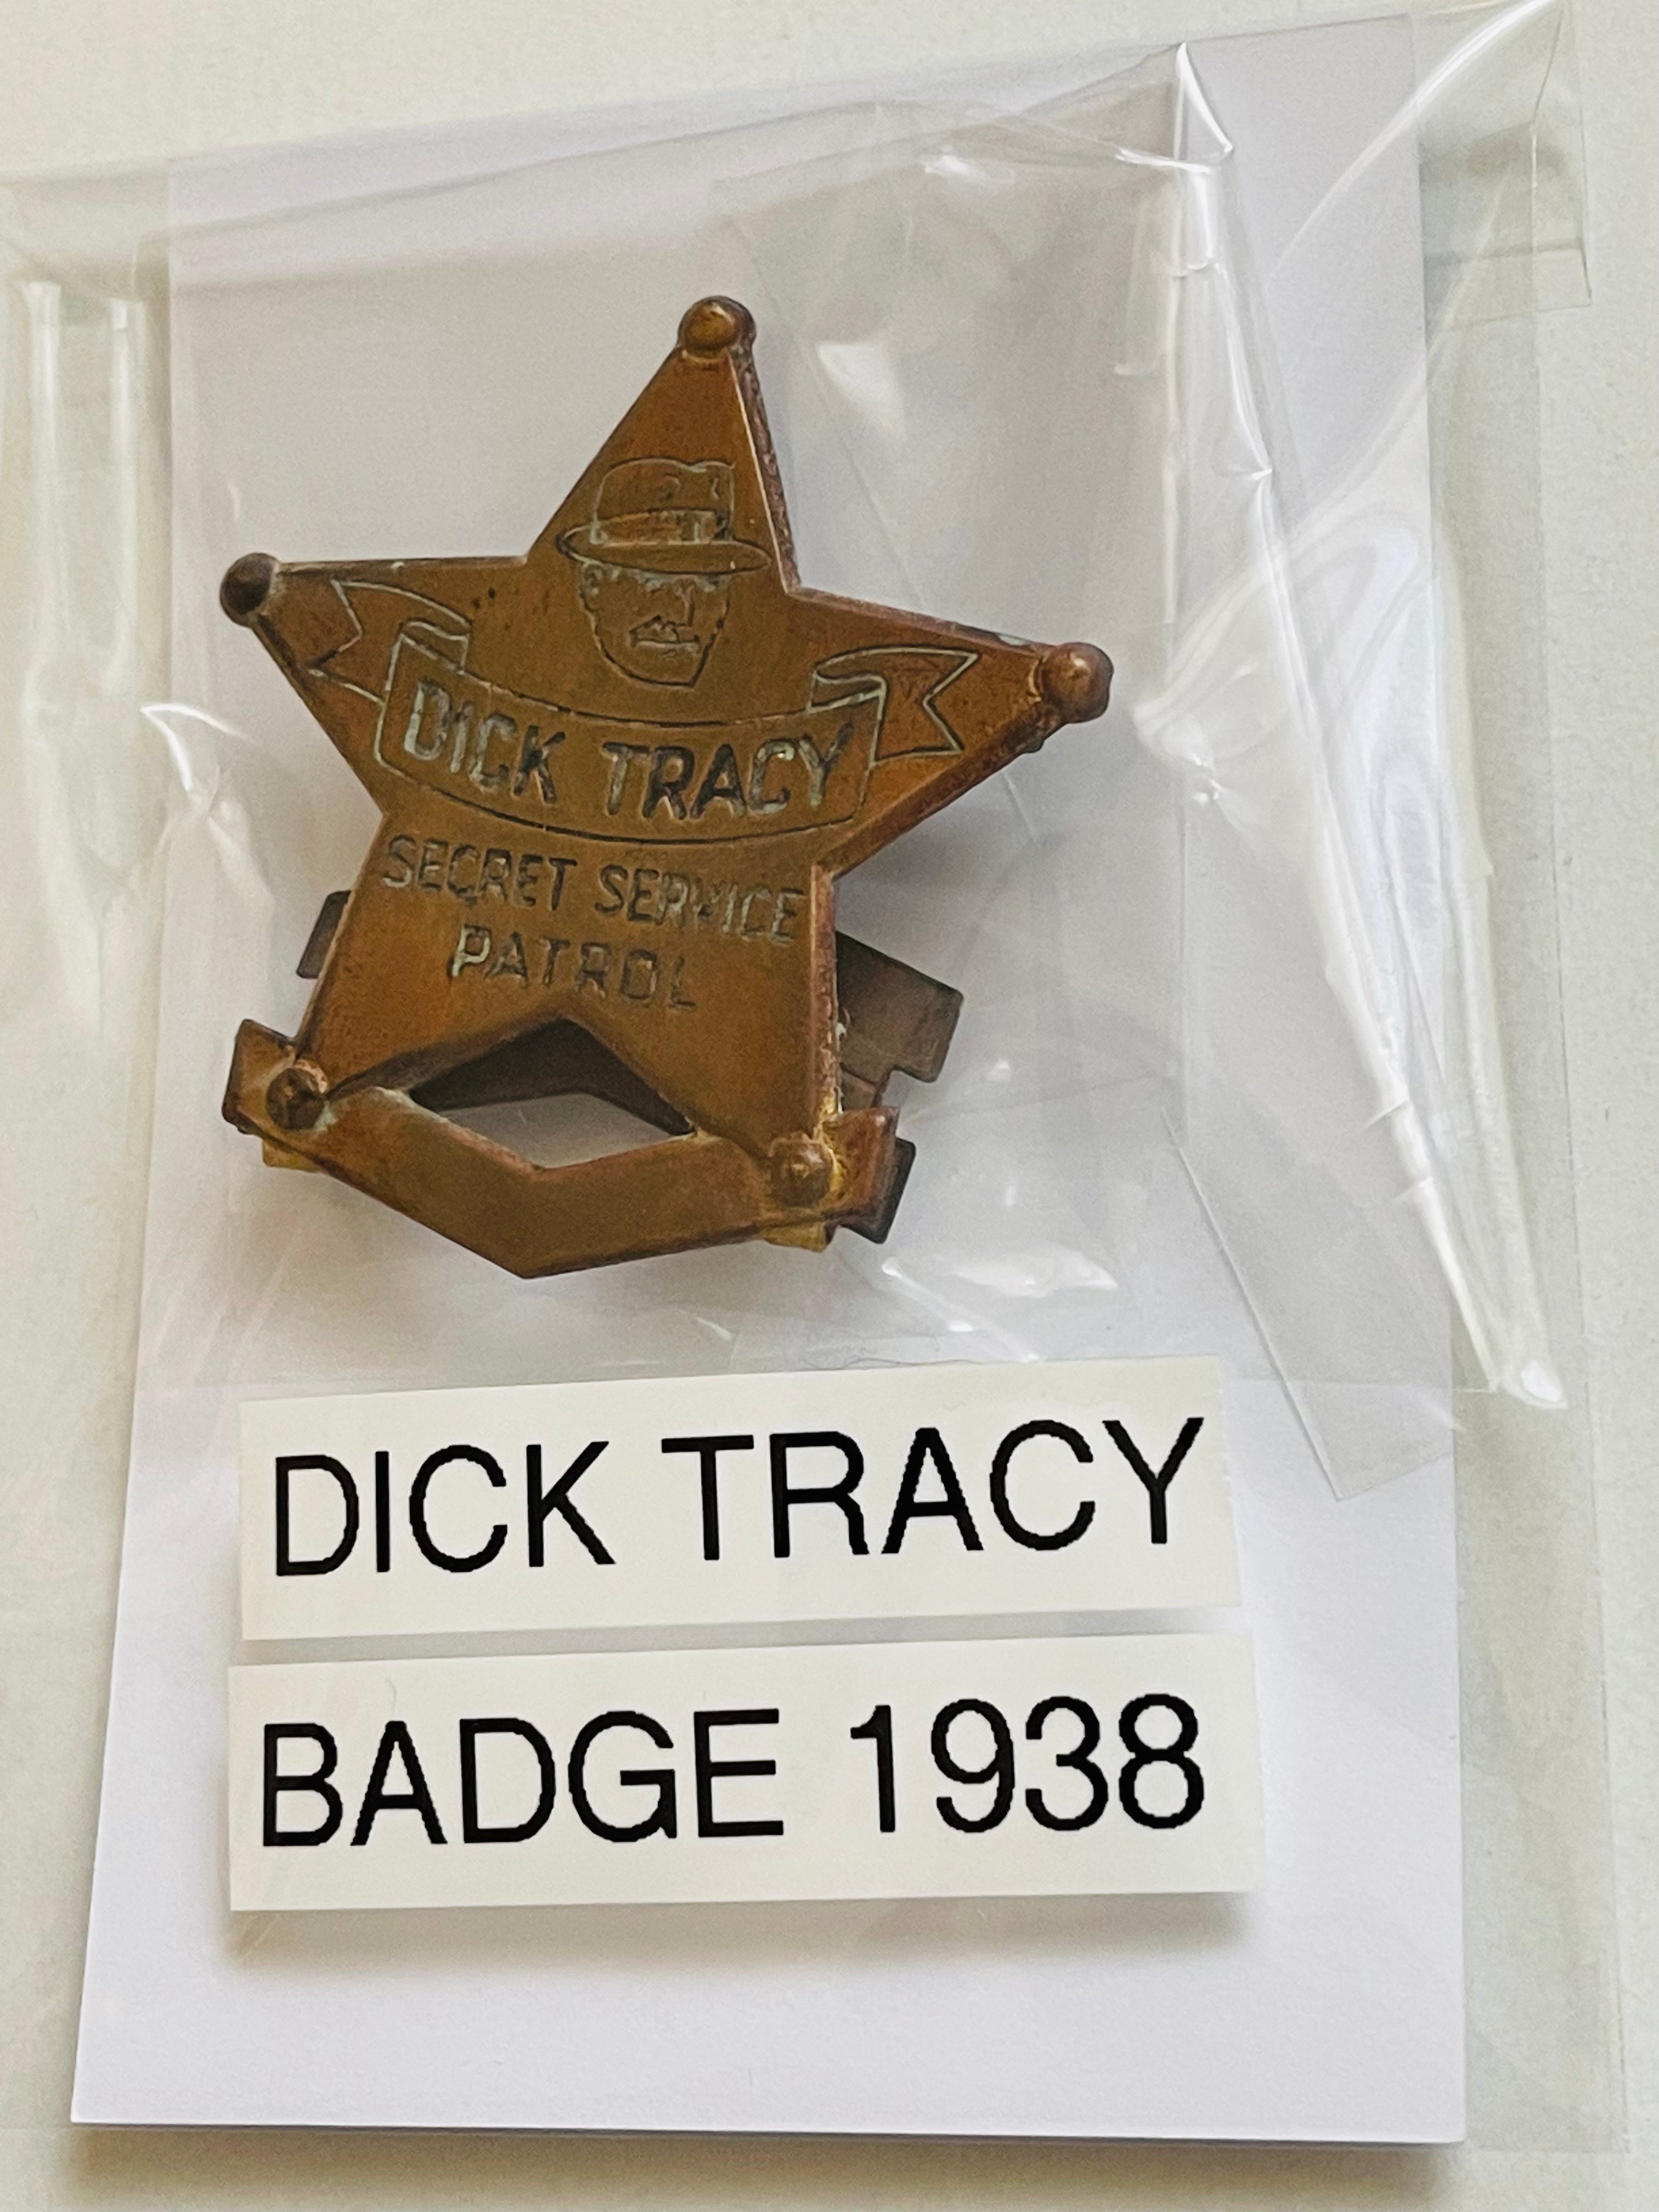 Dick Tracy secret service patrol rare Quaker Oats metal badge 1938